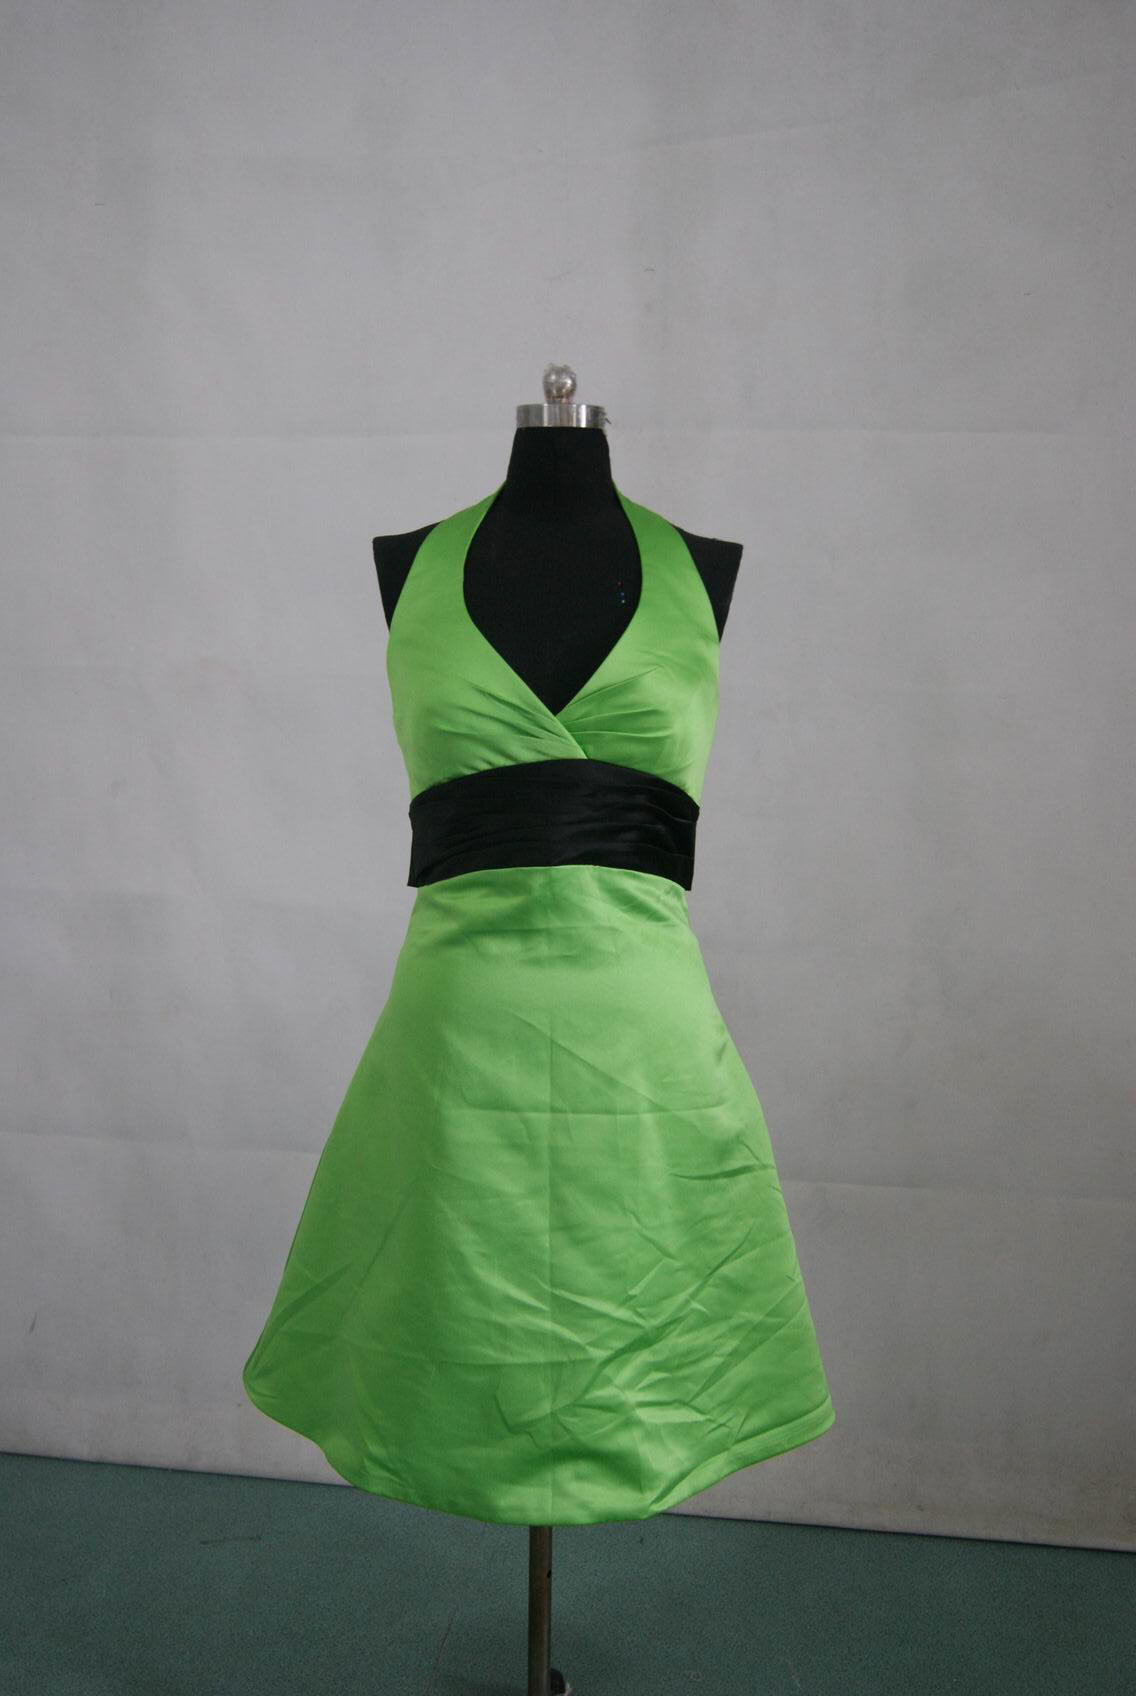 Lime green dress with black sash